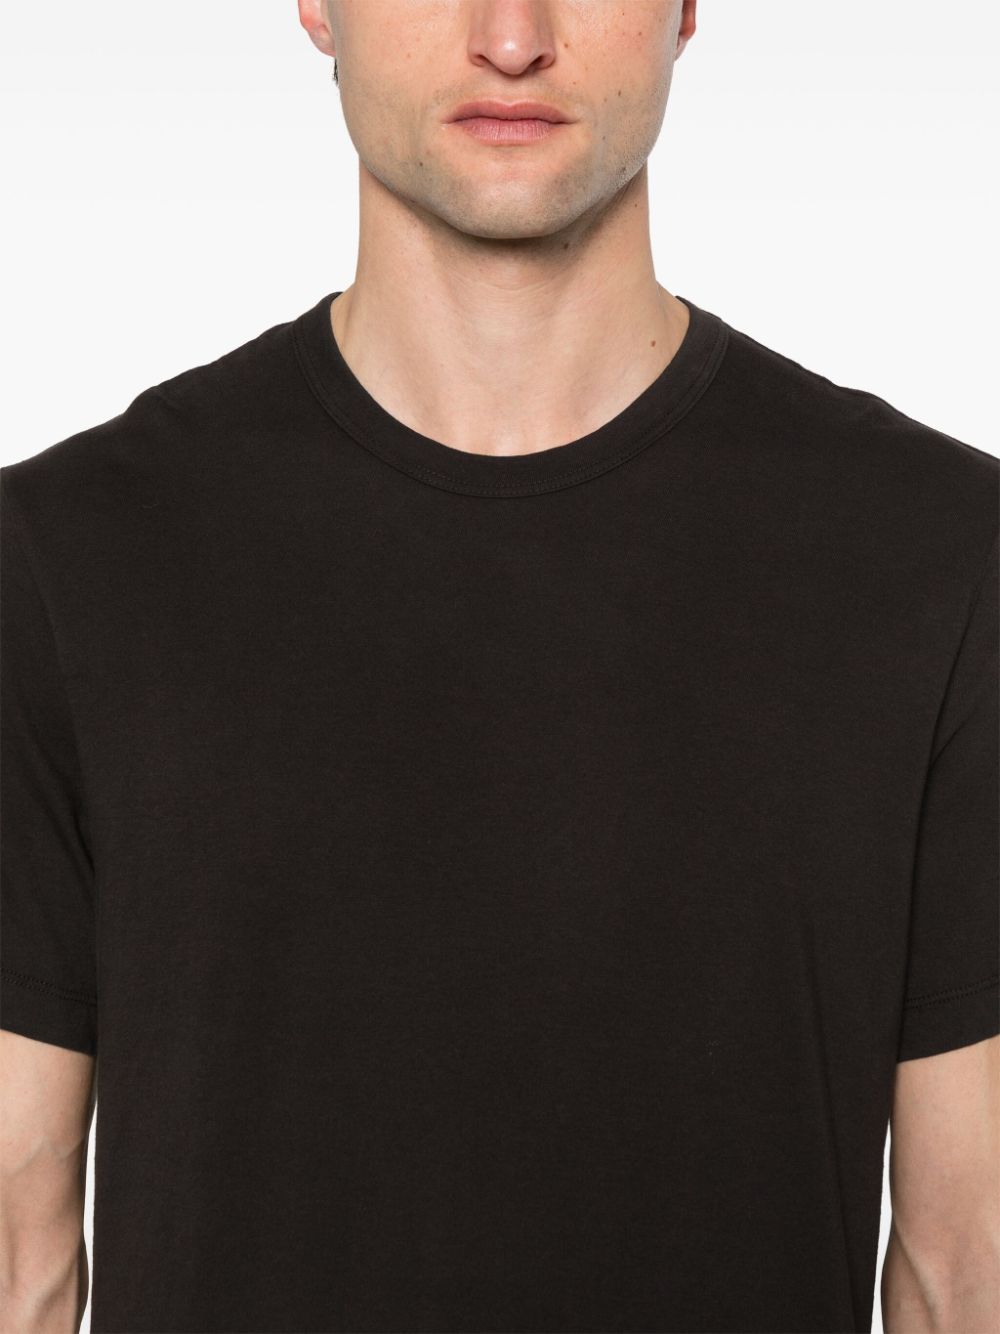 James Perse Jersey-katoenen T-shirt Bruin